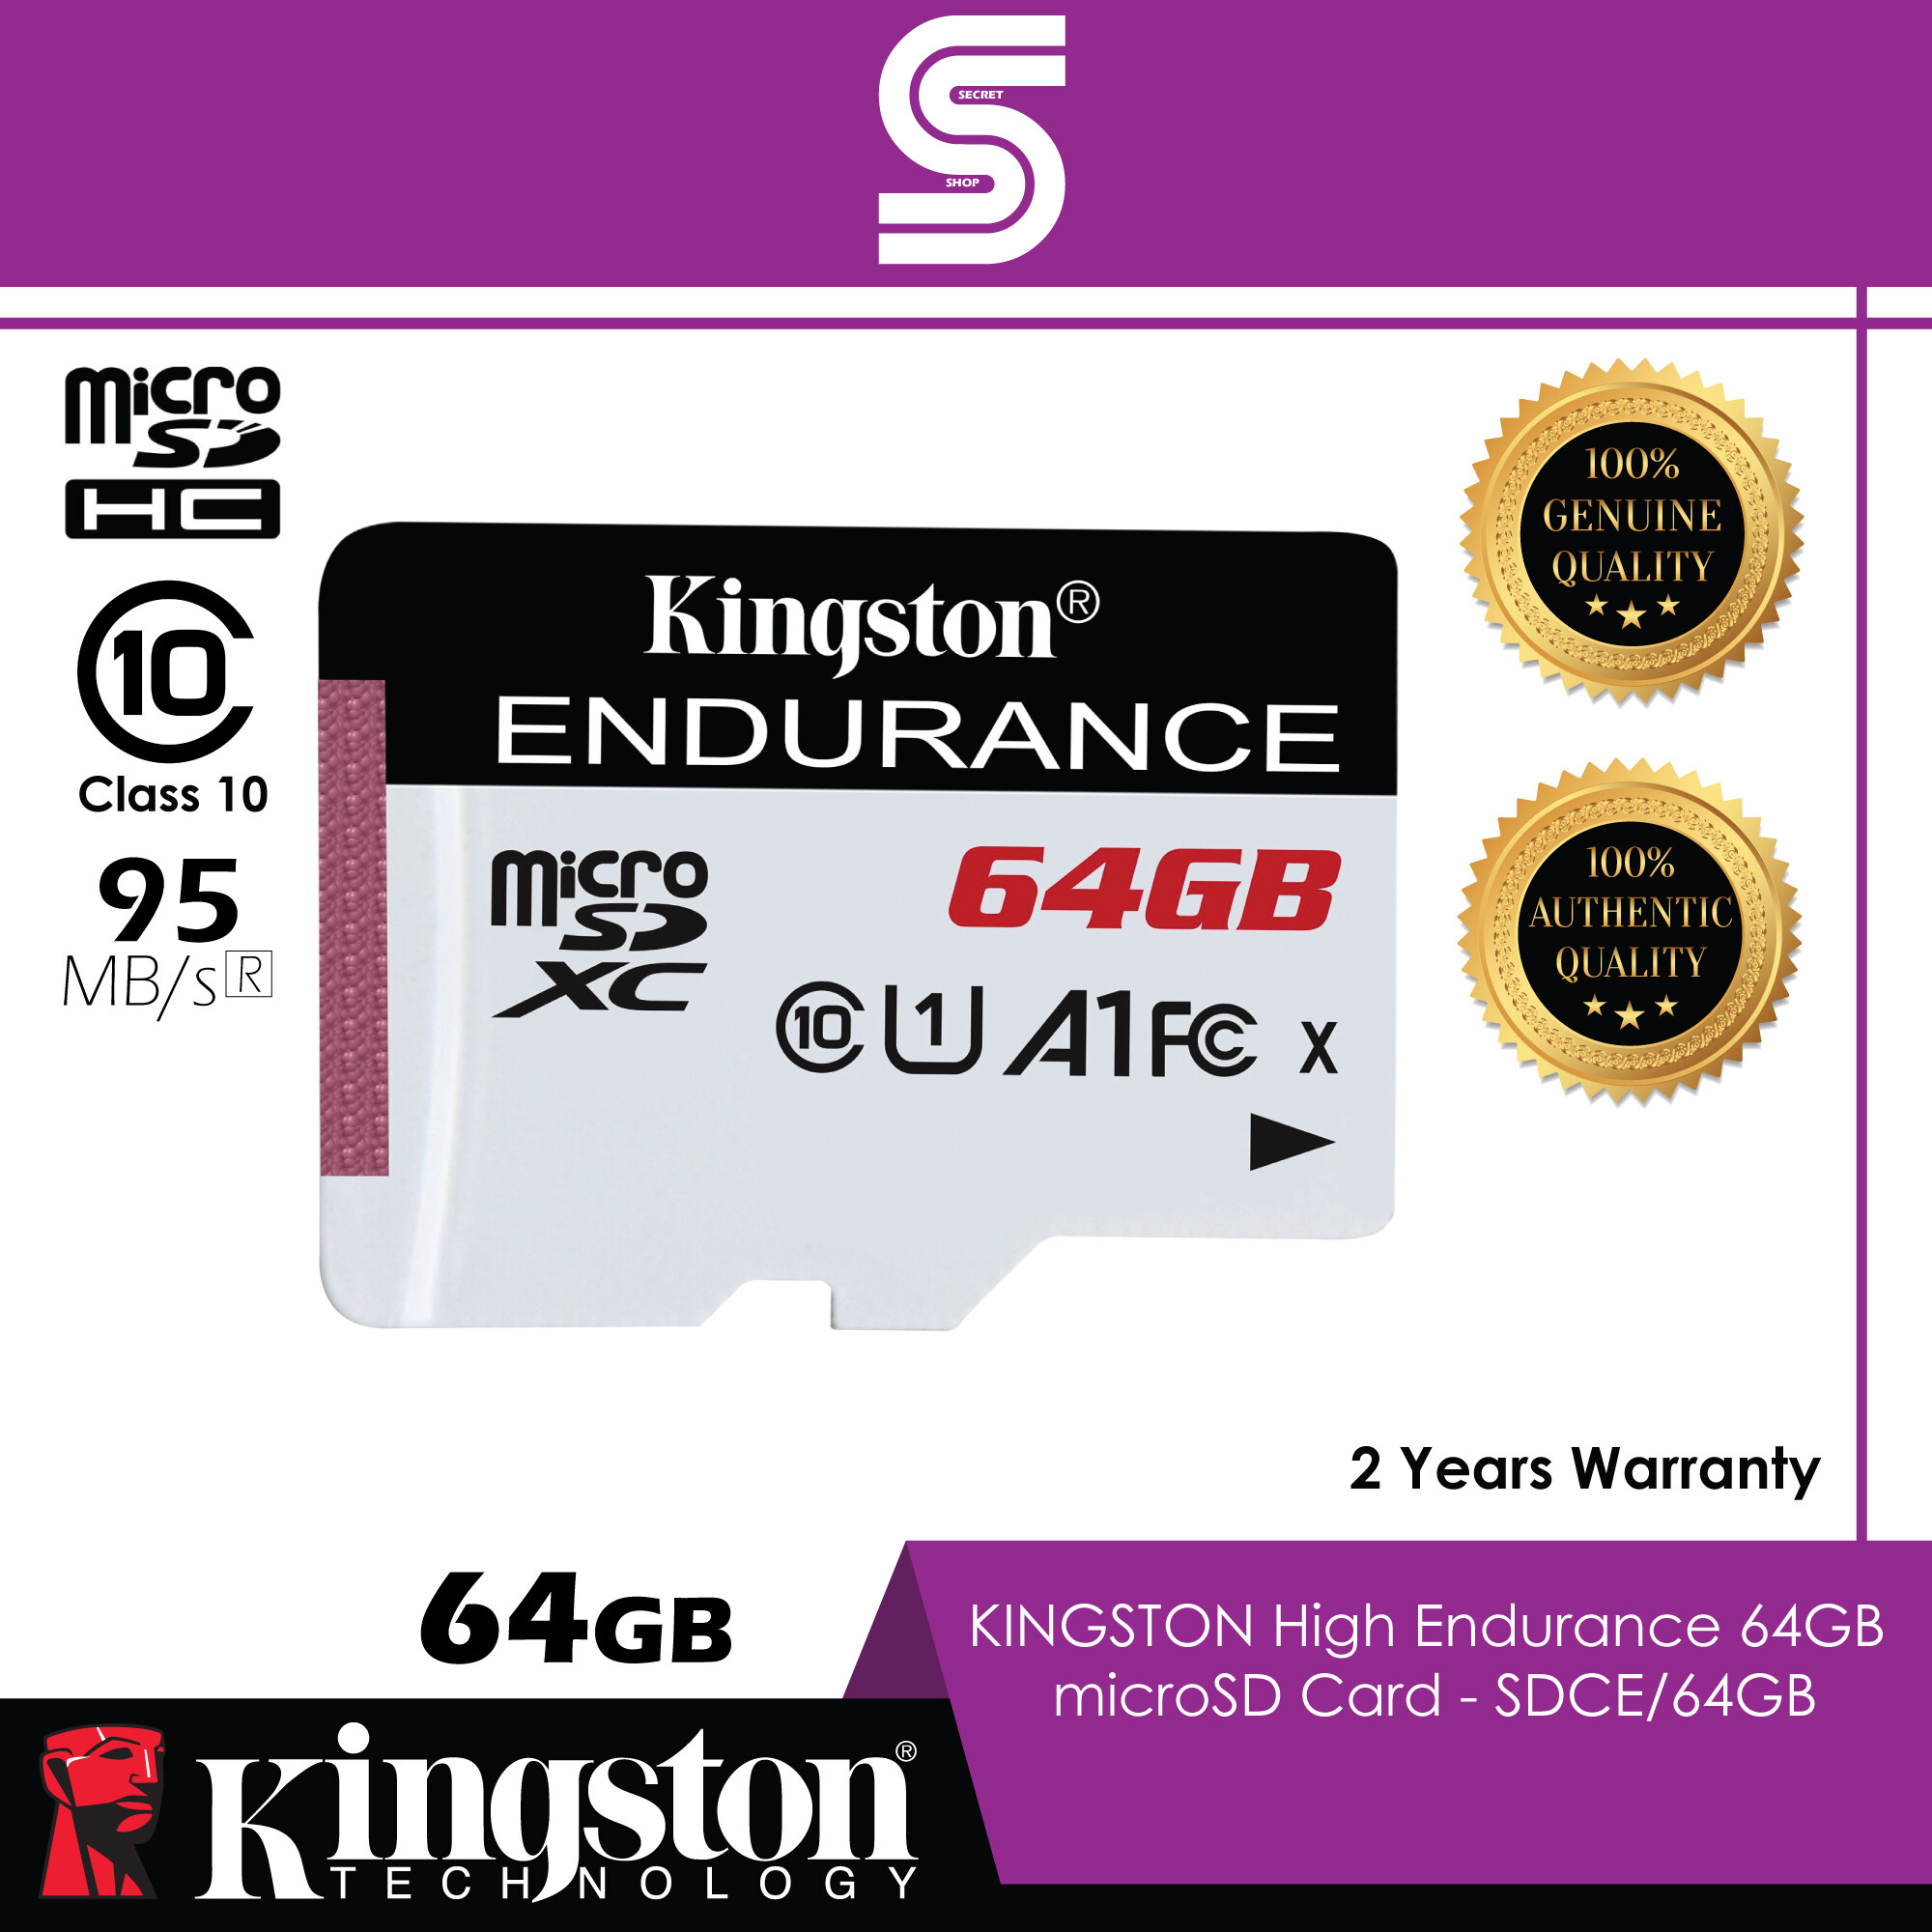 Kingston High Endurance 64GB microSD Card - SDCE/64GB